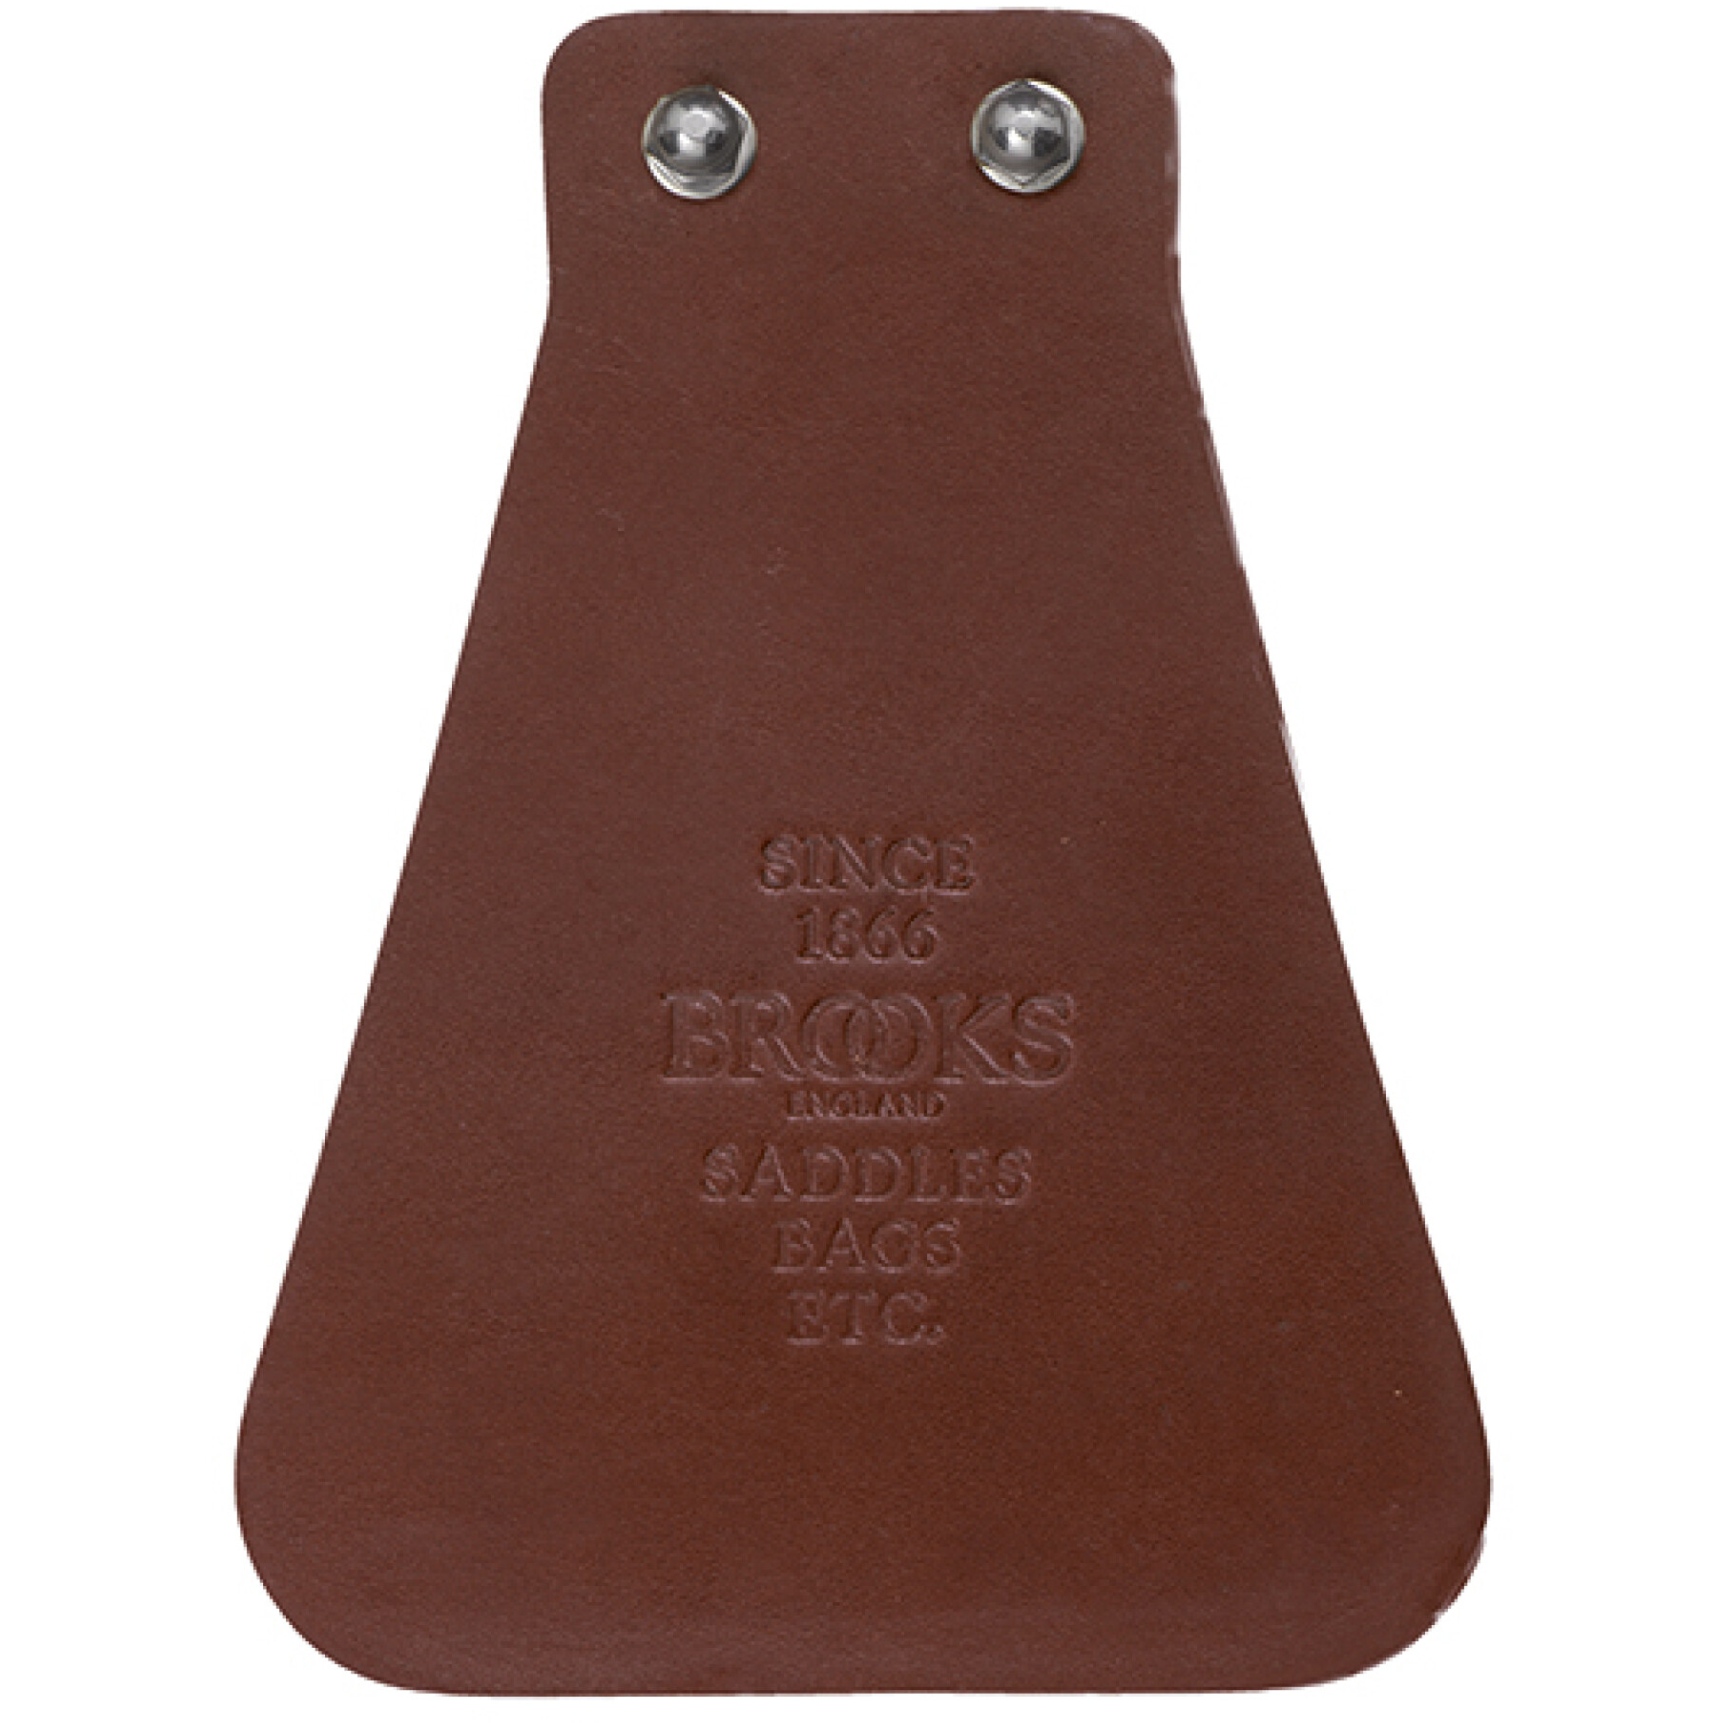 Produktbild von Brooks Leather Mud Flap Schmutzfänger - braun